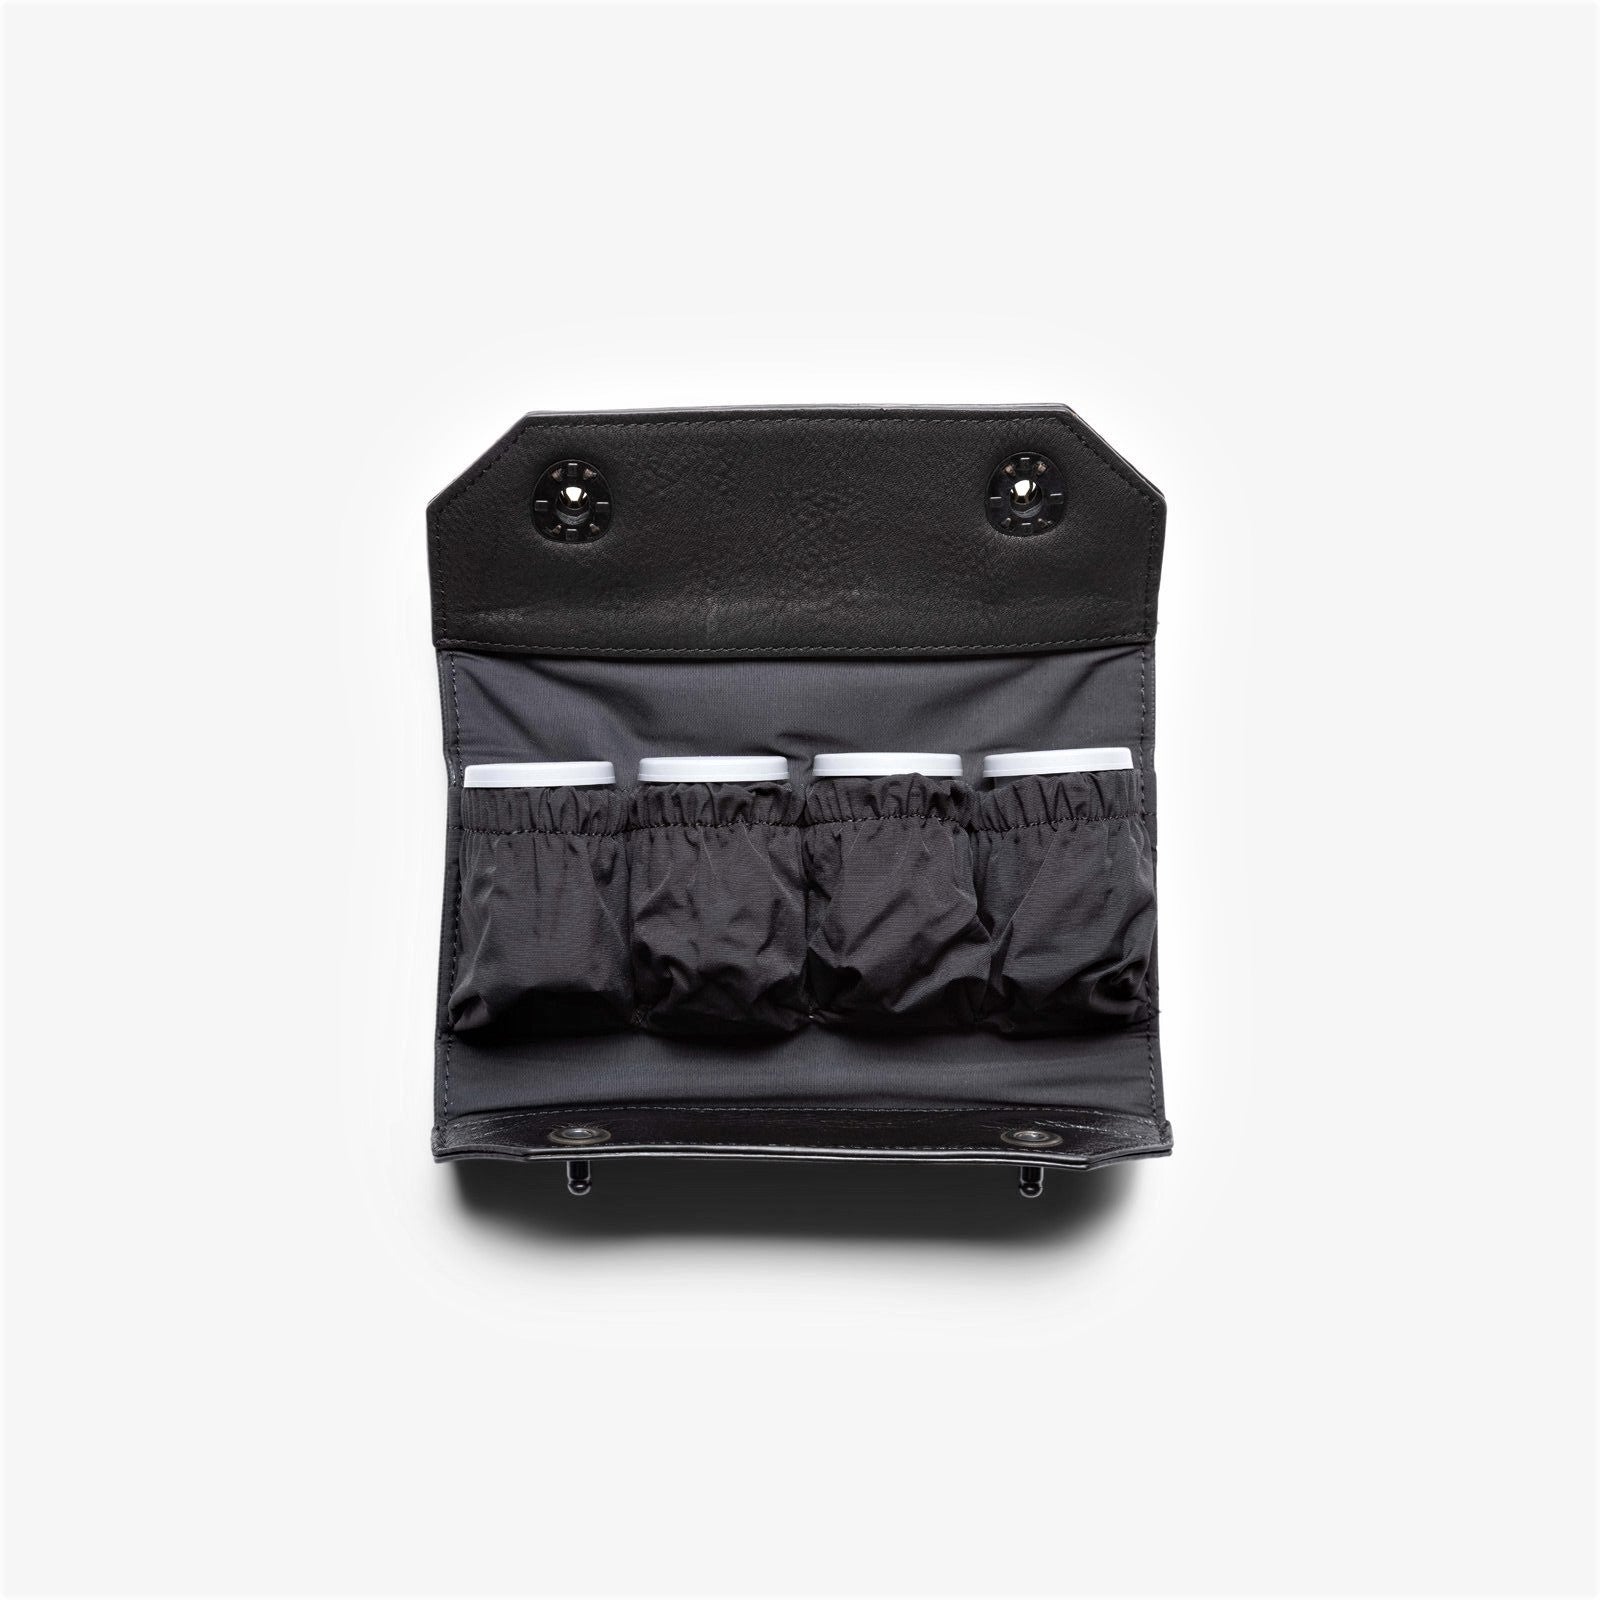 Langly Camera Battery & Film Holder (Black)